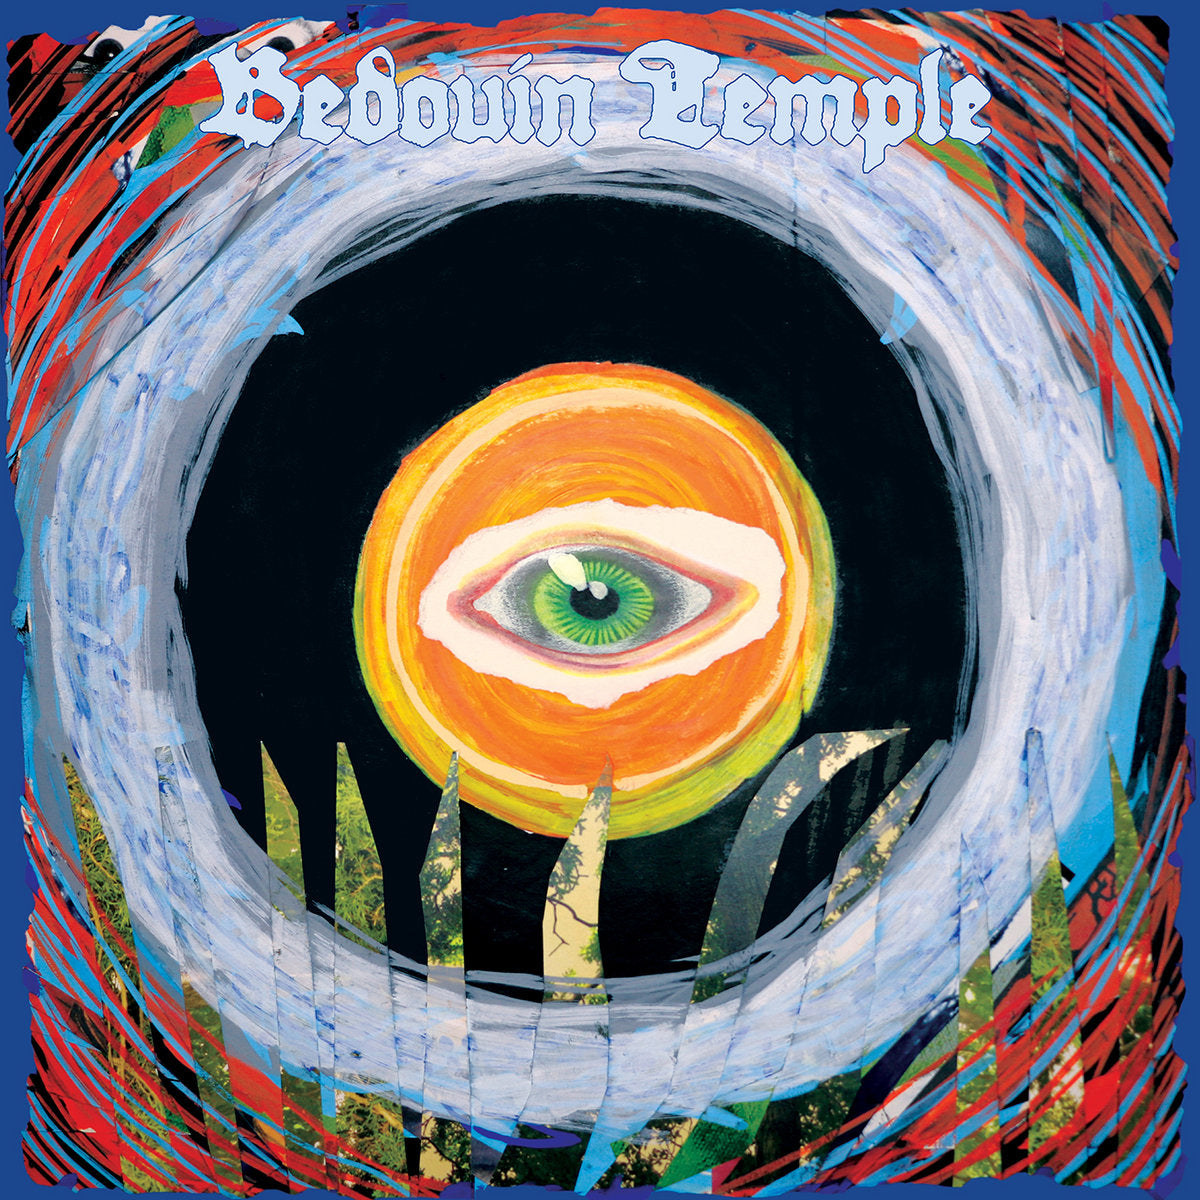 Bedouin Temple - s/t CD